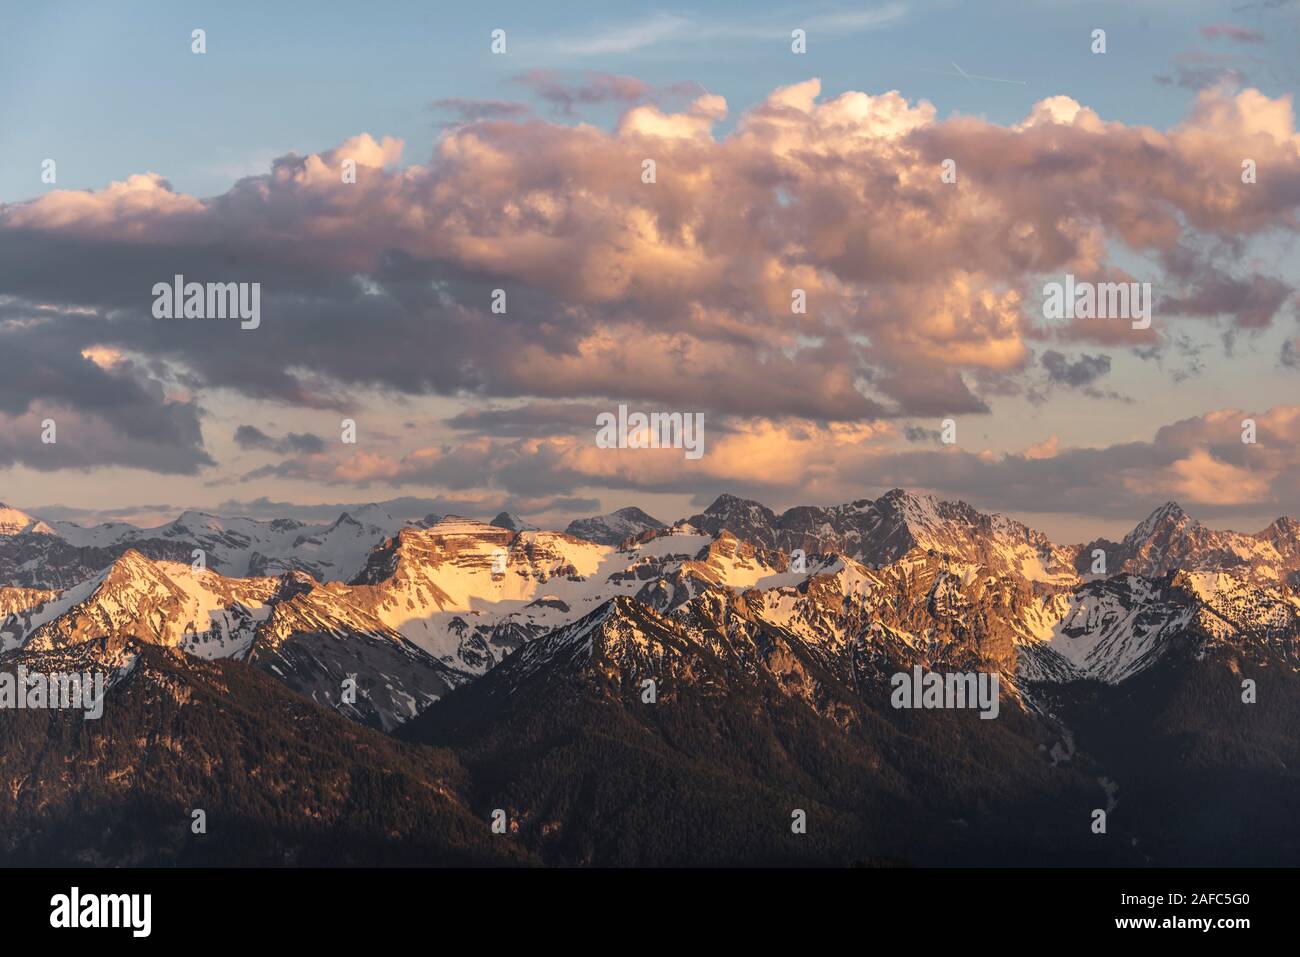 Karwendelgebirge und Soierngruppe, Blick auf die schneebedeckten Berge bei Sonnenuntergang, Alpen, Oberbayern, Bayern, Deutschland Stockfoto